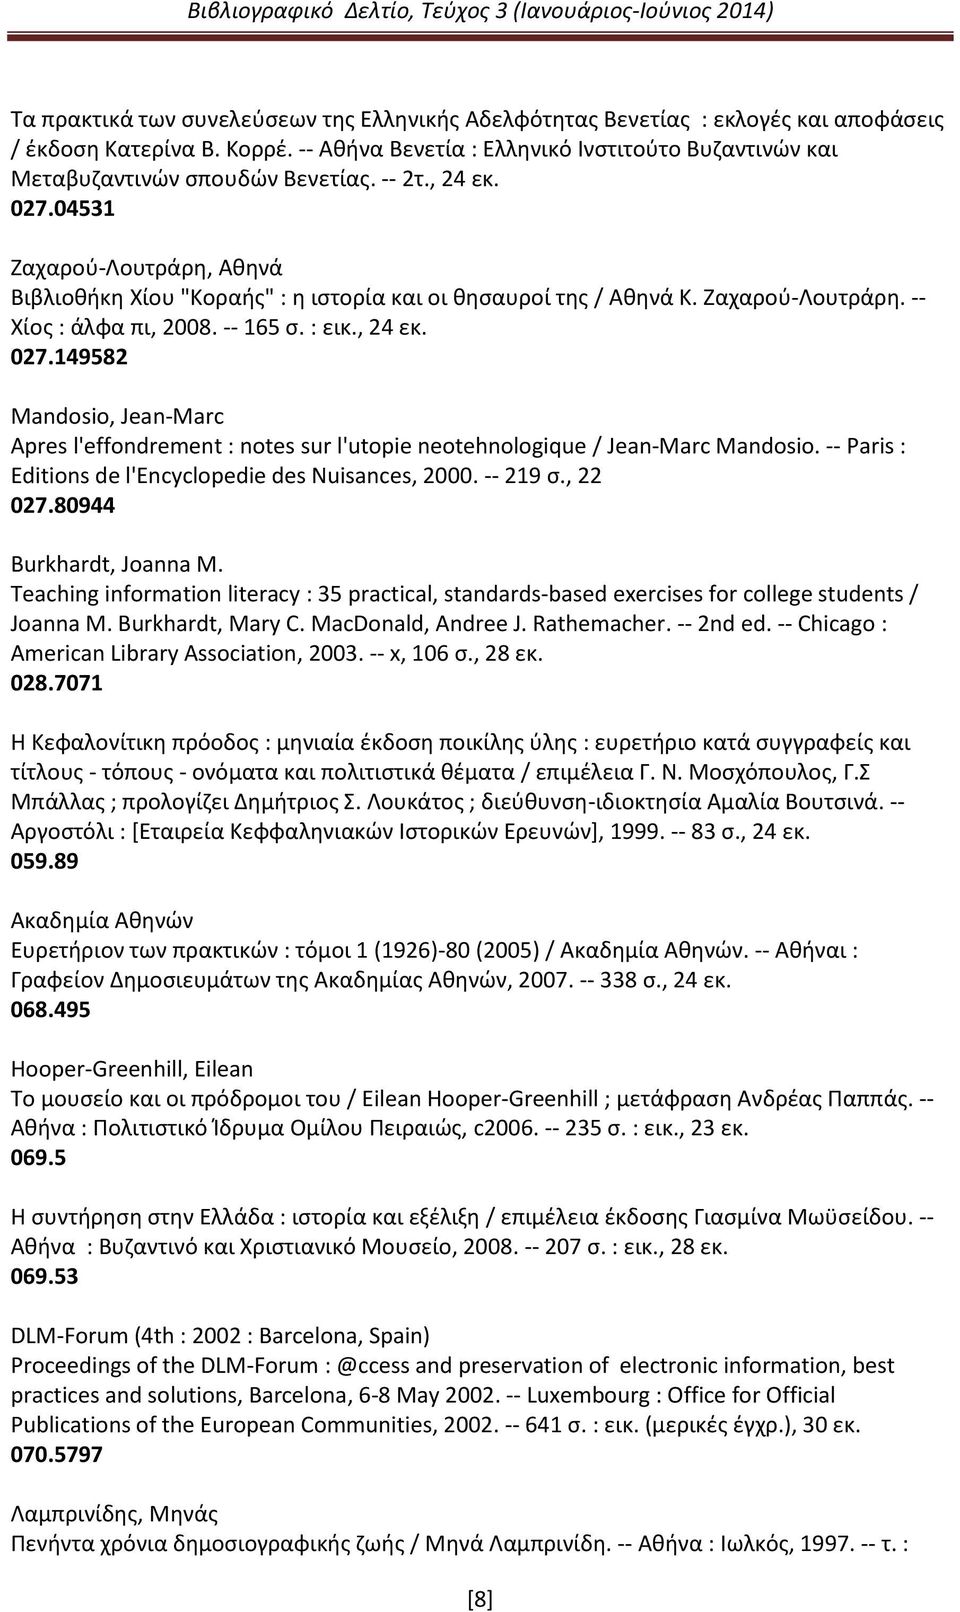 04531 Ζαχαρού-Λουτράρη, Αθηνά Βιβλιοθήκη Χίου "Κοραής" : η ιστορία και οι θησαυροί της / Αθηνά Κ. Ζαχαρού-Λουτράρη. -- Χίος : άλφα πι, 2008. -- 165 σ. : εικ., 24 εκ. 027.